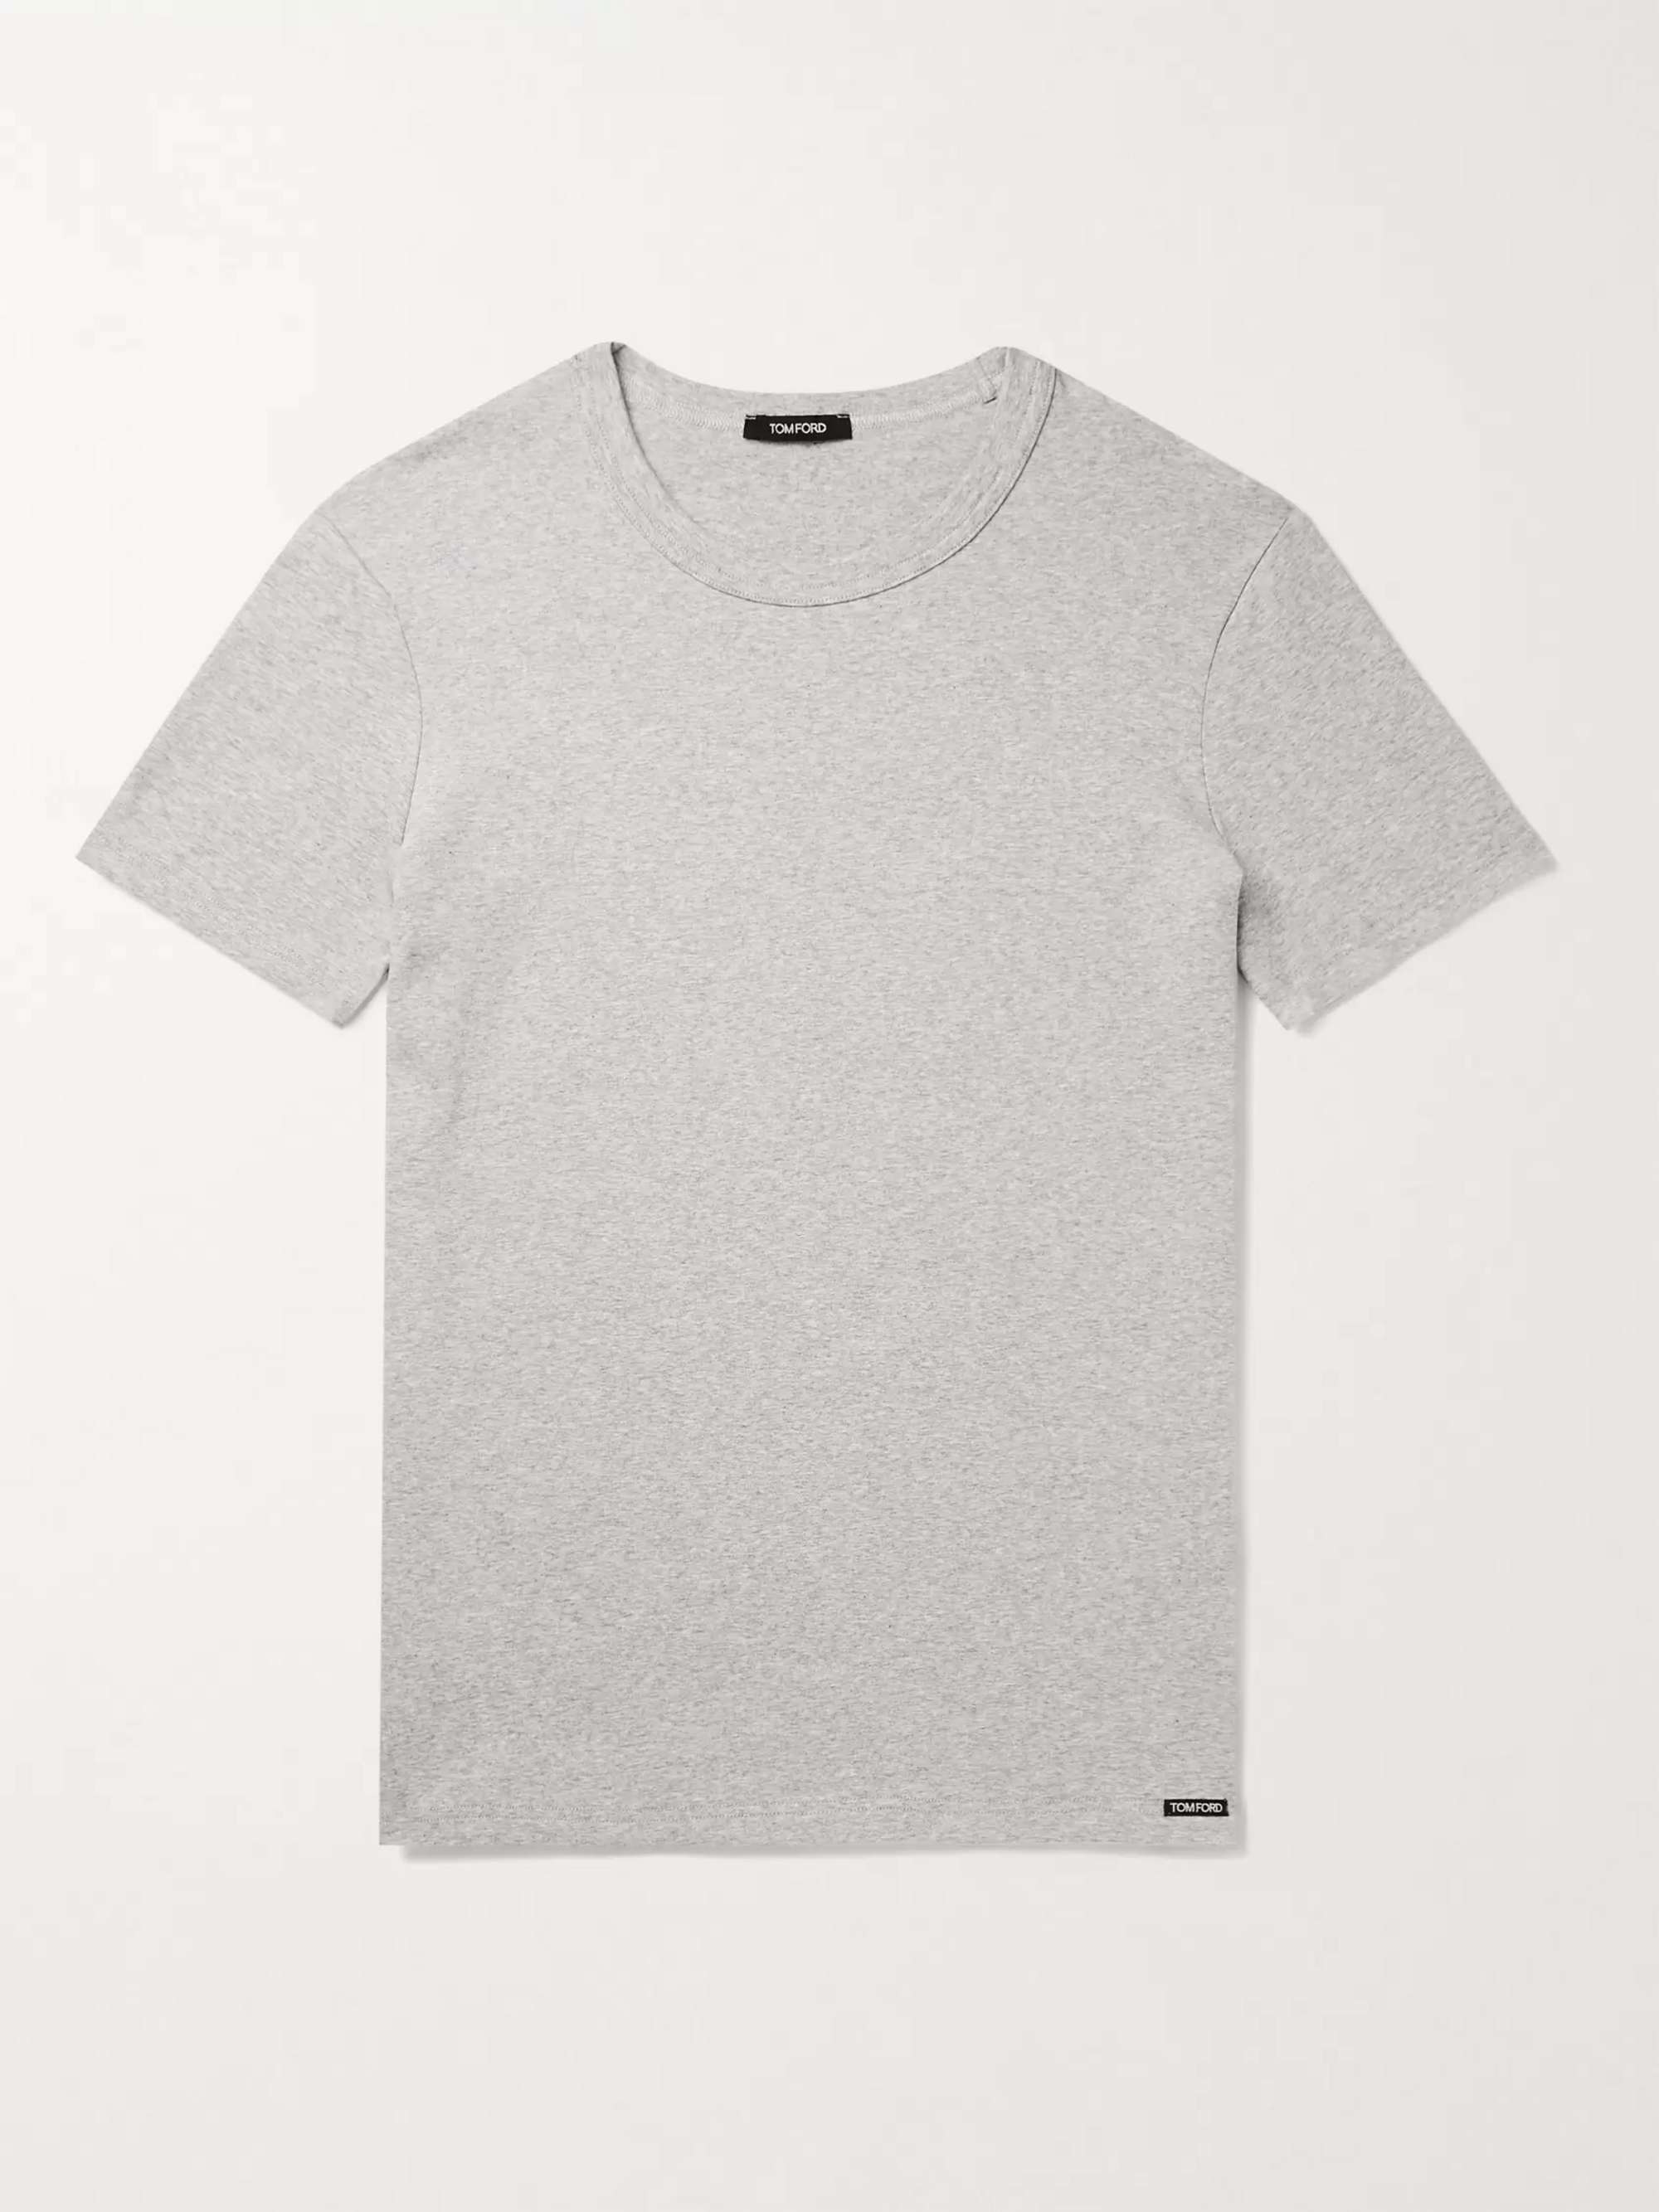 Приталенная футболка из меланжевого эластичного хлопкового джерси TOM FORD, серый